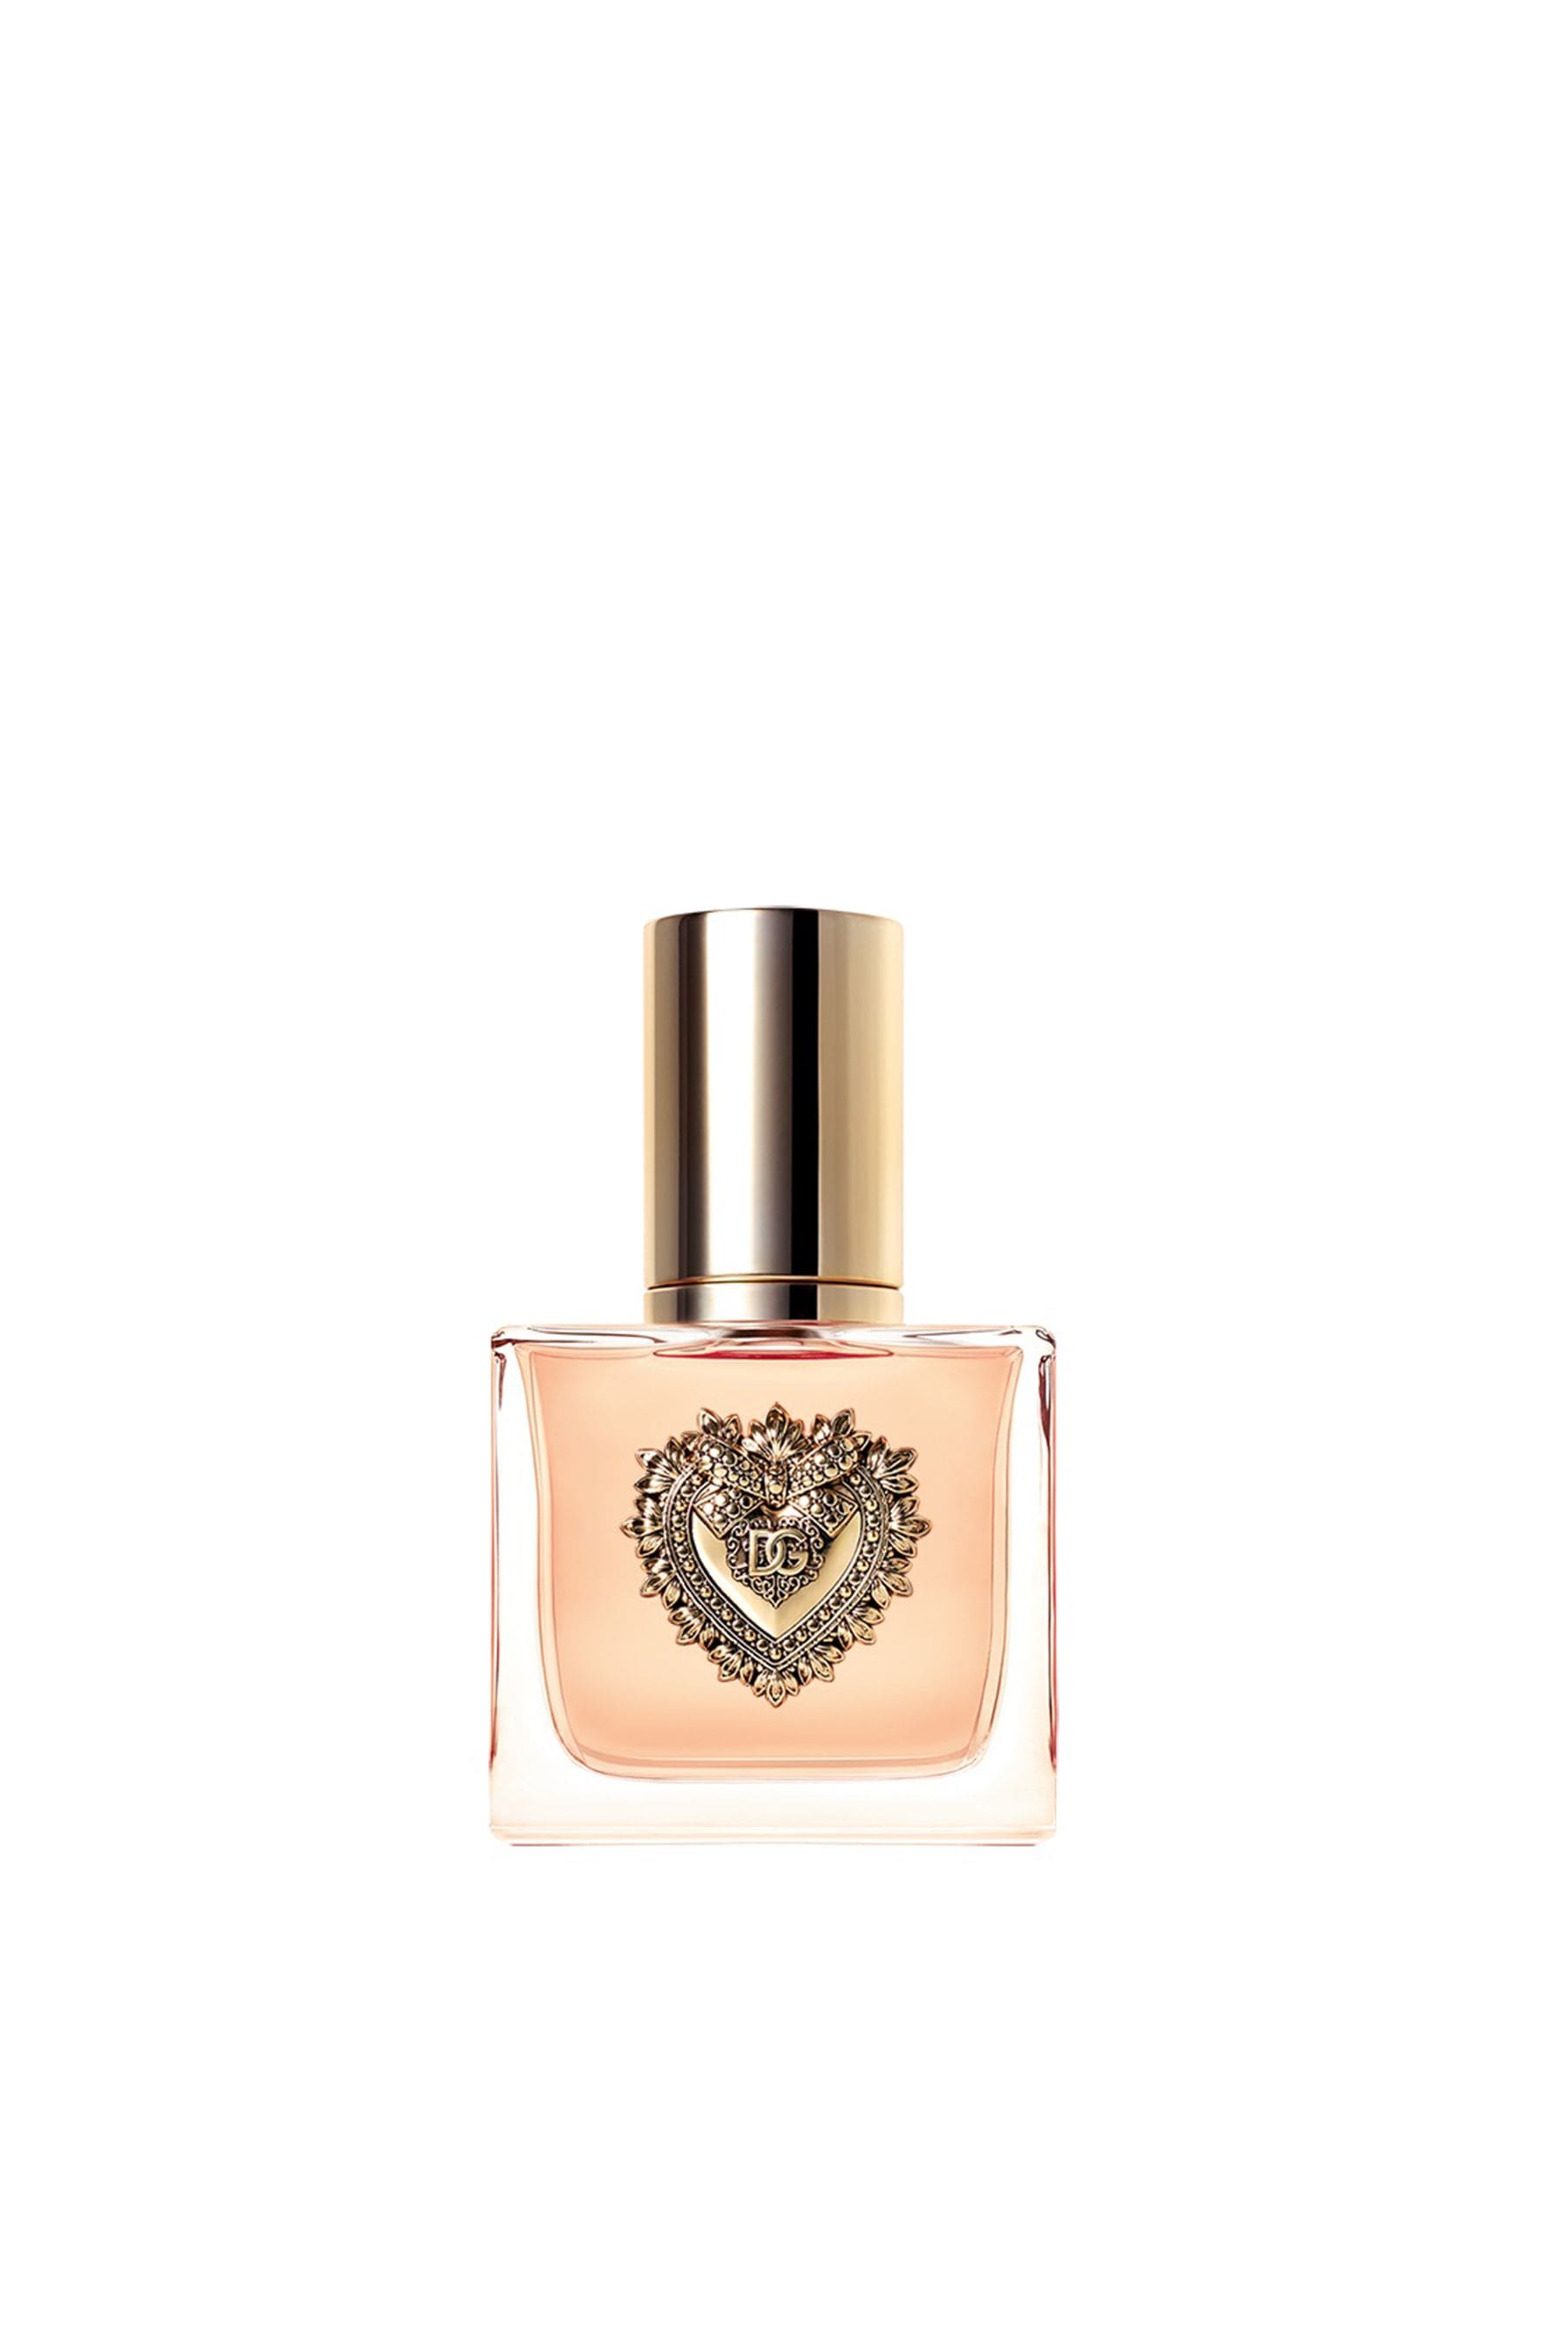 Buy Dolce&Gabbana Devotion Eau De Parfum 30ml from the Next UK online shop